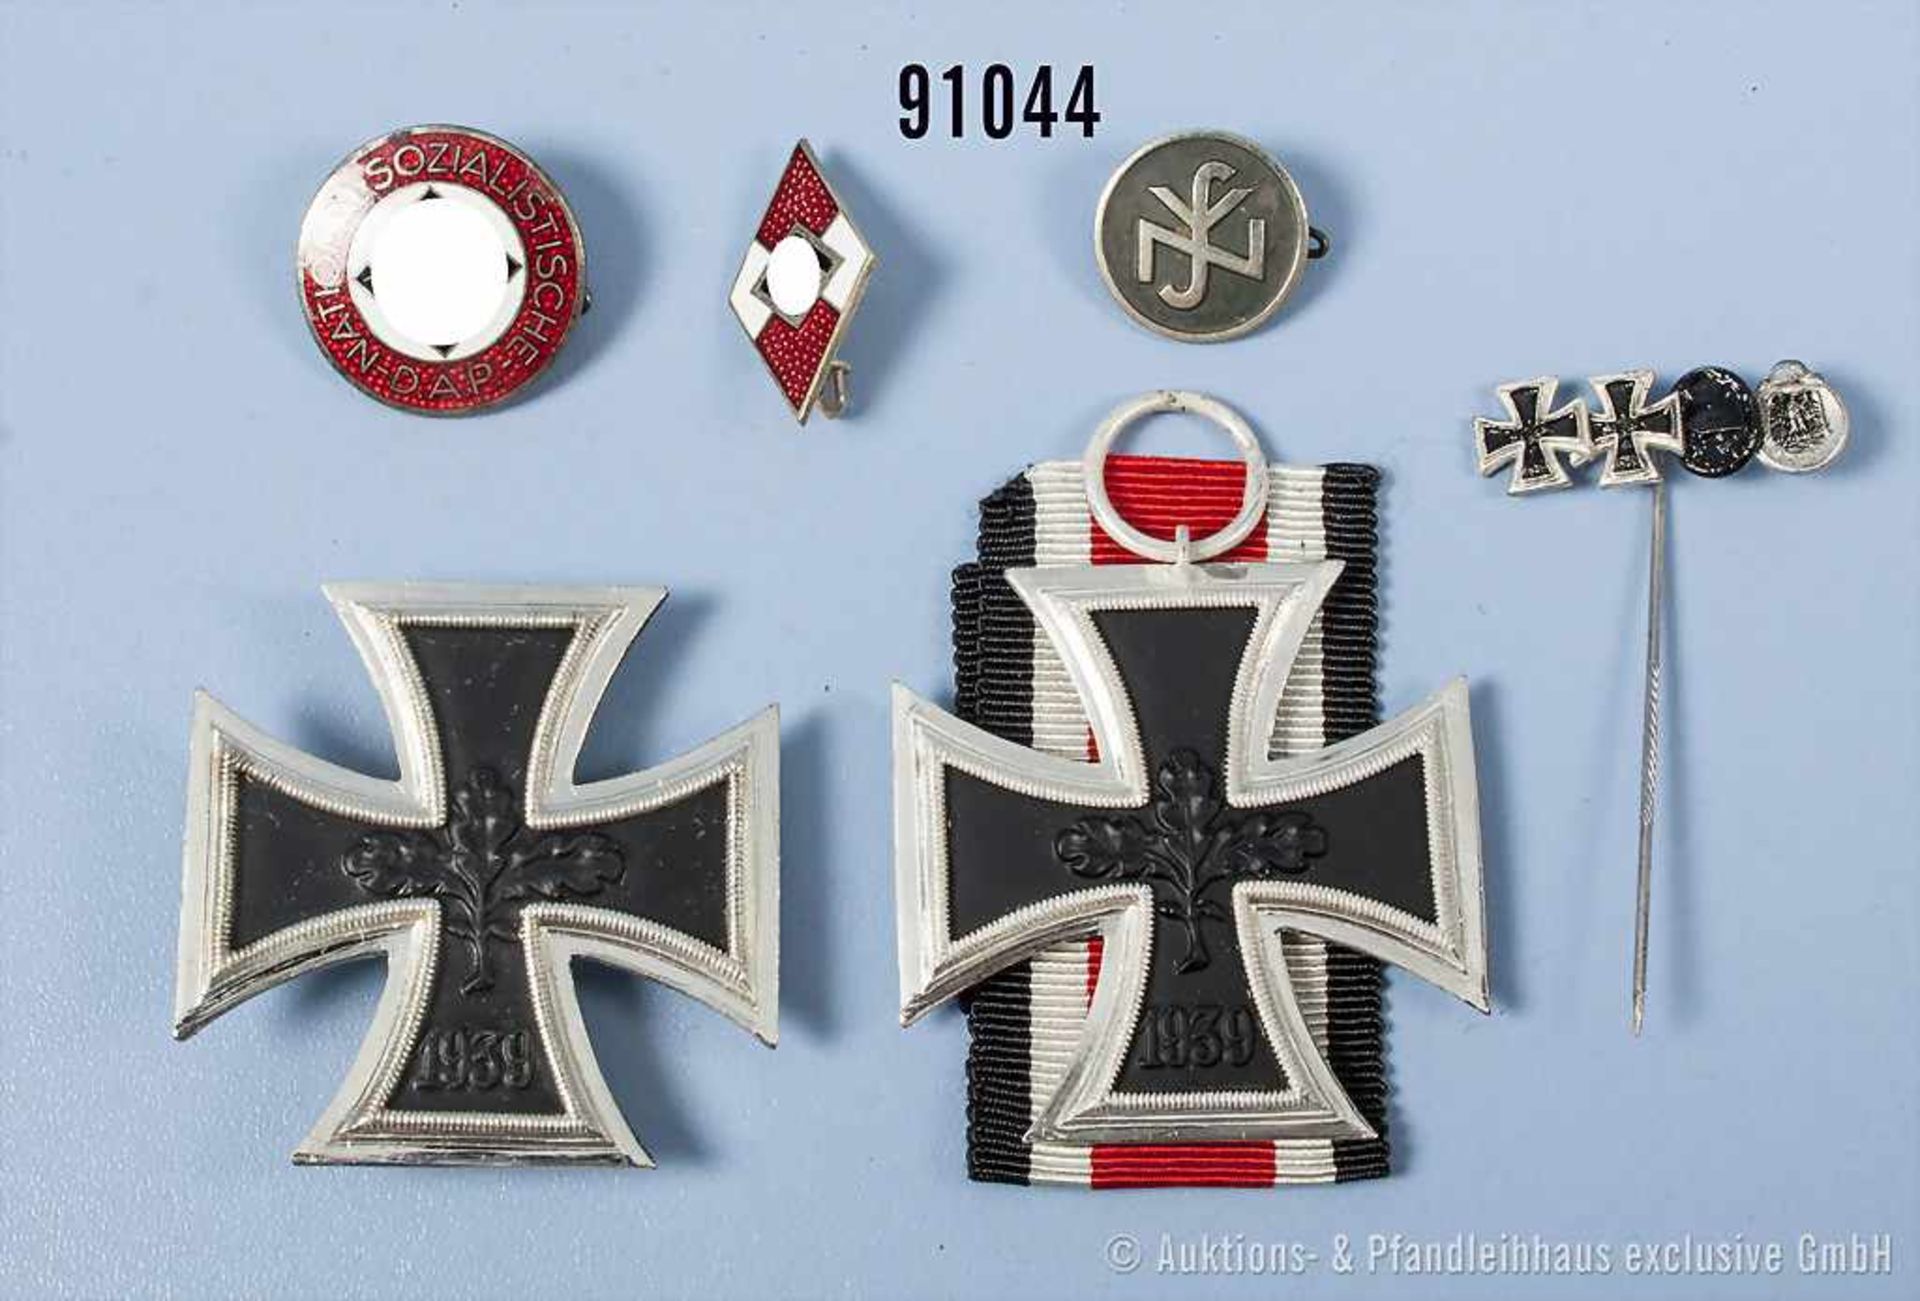 Konv. 1957er Auszeichnungen, EK 2, EK 1 und 4er Miniaturnadel sowie 3 Mitgliedsabzeichen 3. Reich,